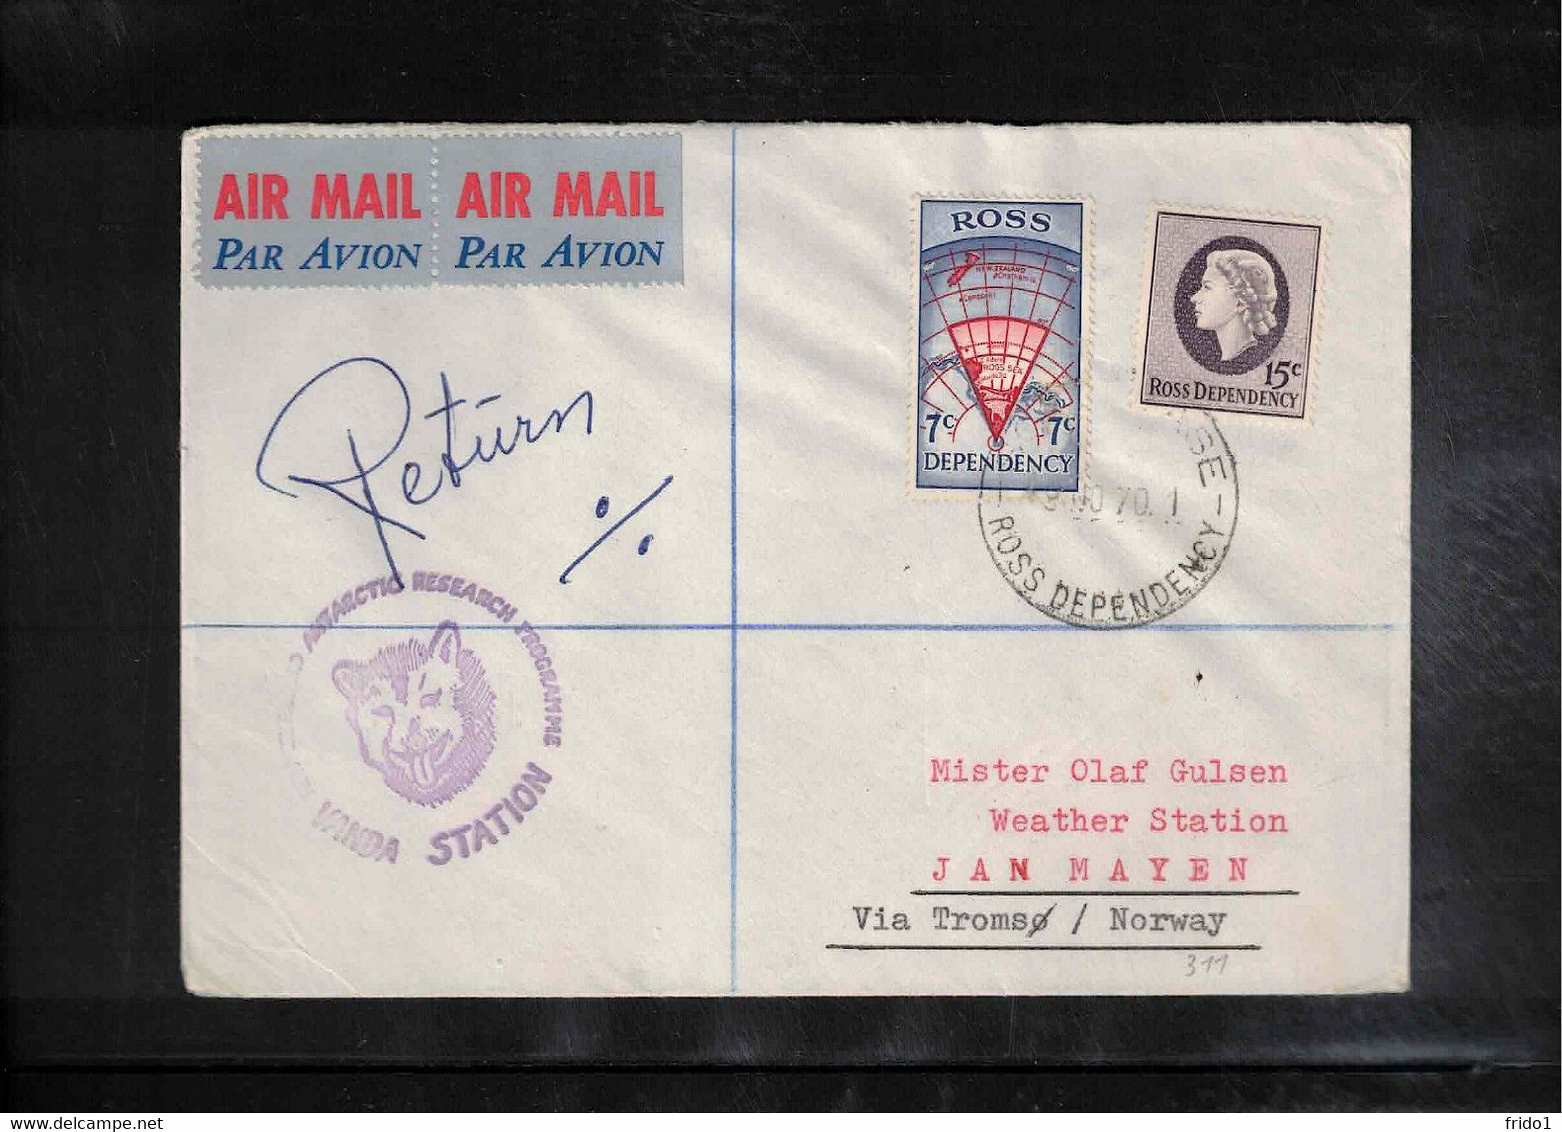 Ross Dependency 1970 Scott Base - VANDA STATION Airmail Interesting Letter - Lettres & Documents